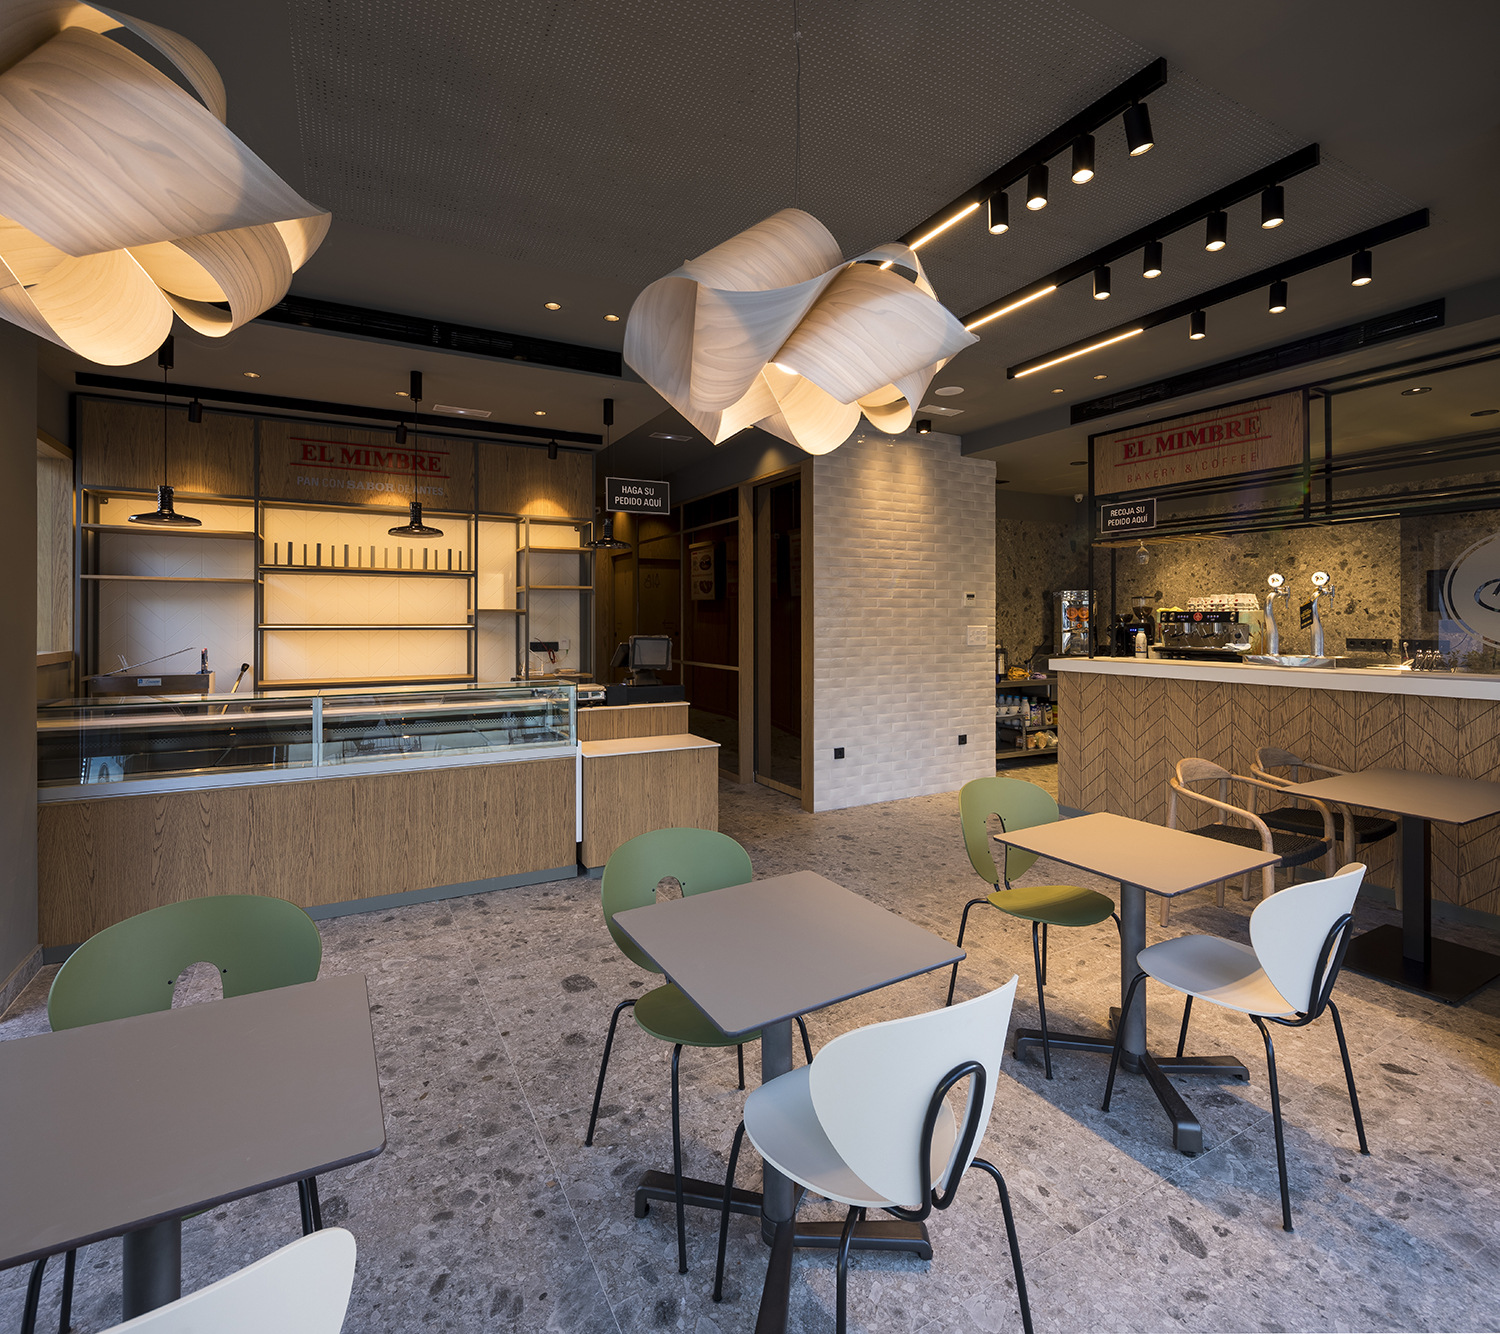 图片[2]|El Mimbre面包店|ART-Arrakis | 建筑室内设计的创新与灵感